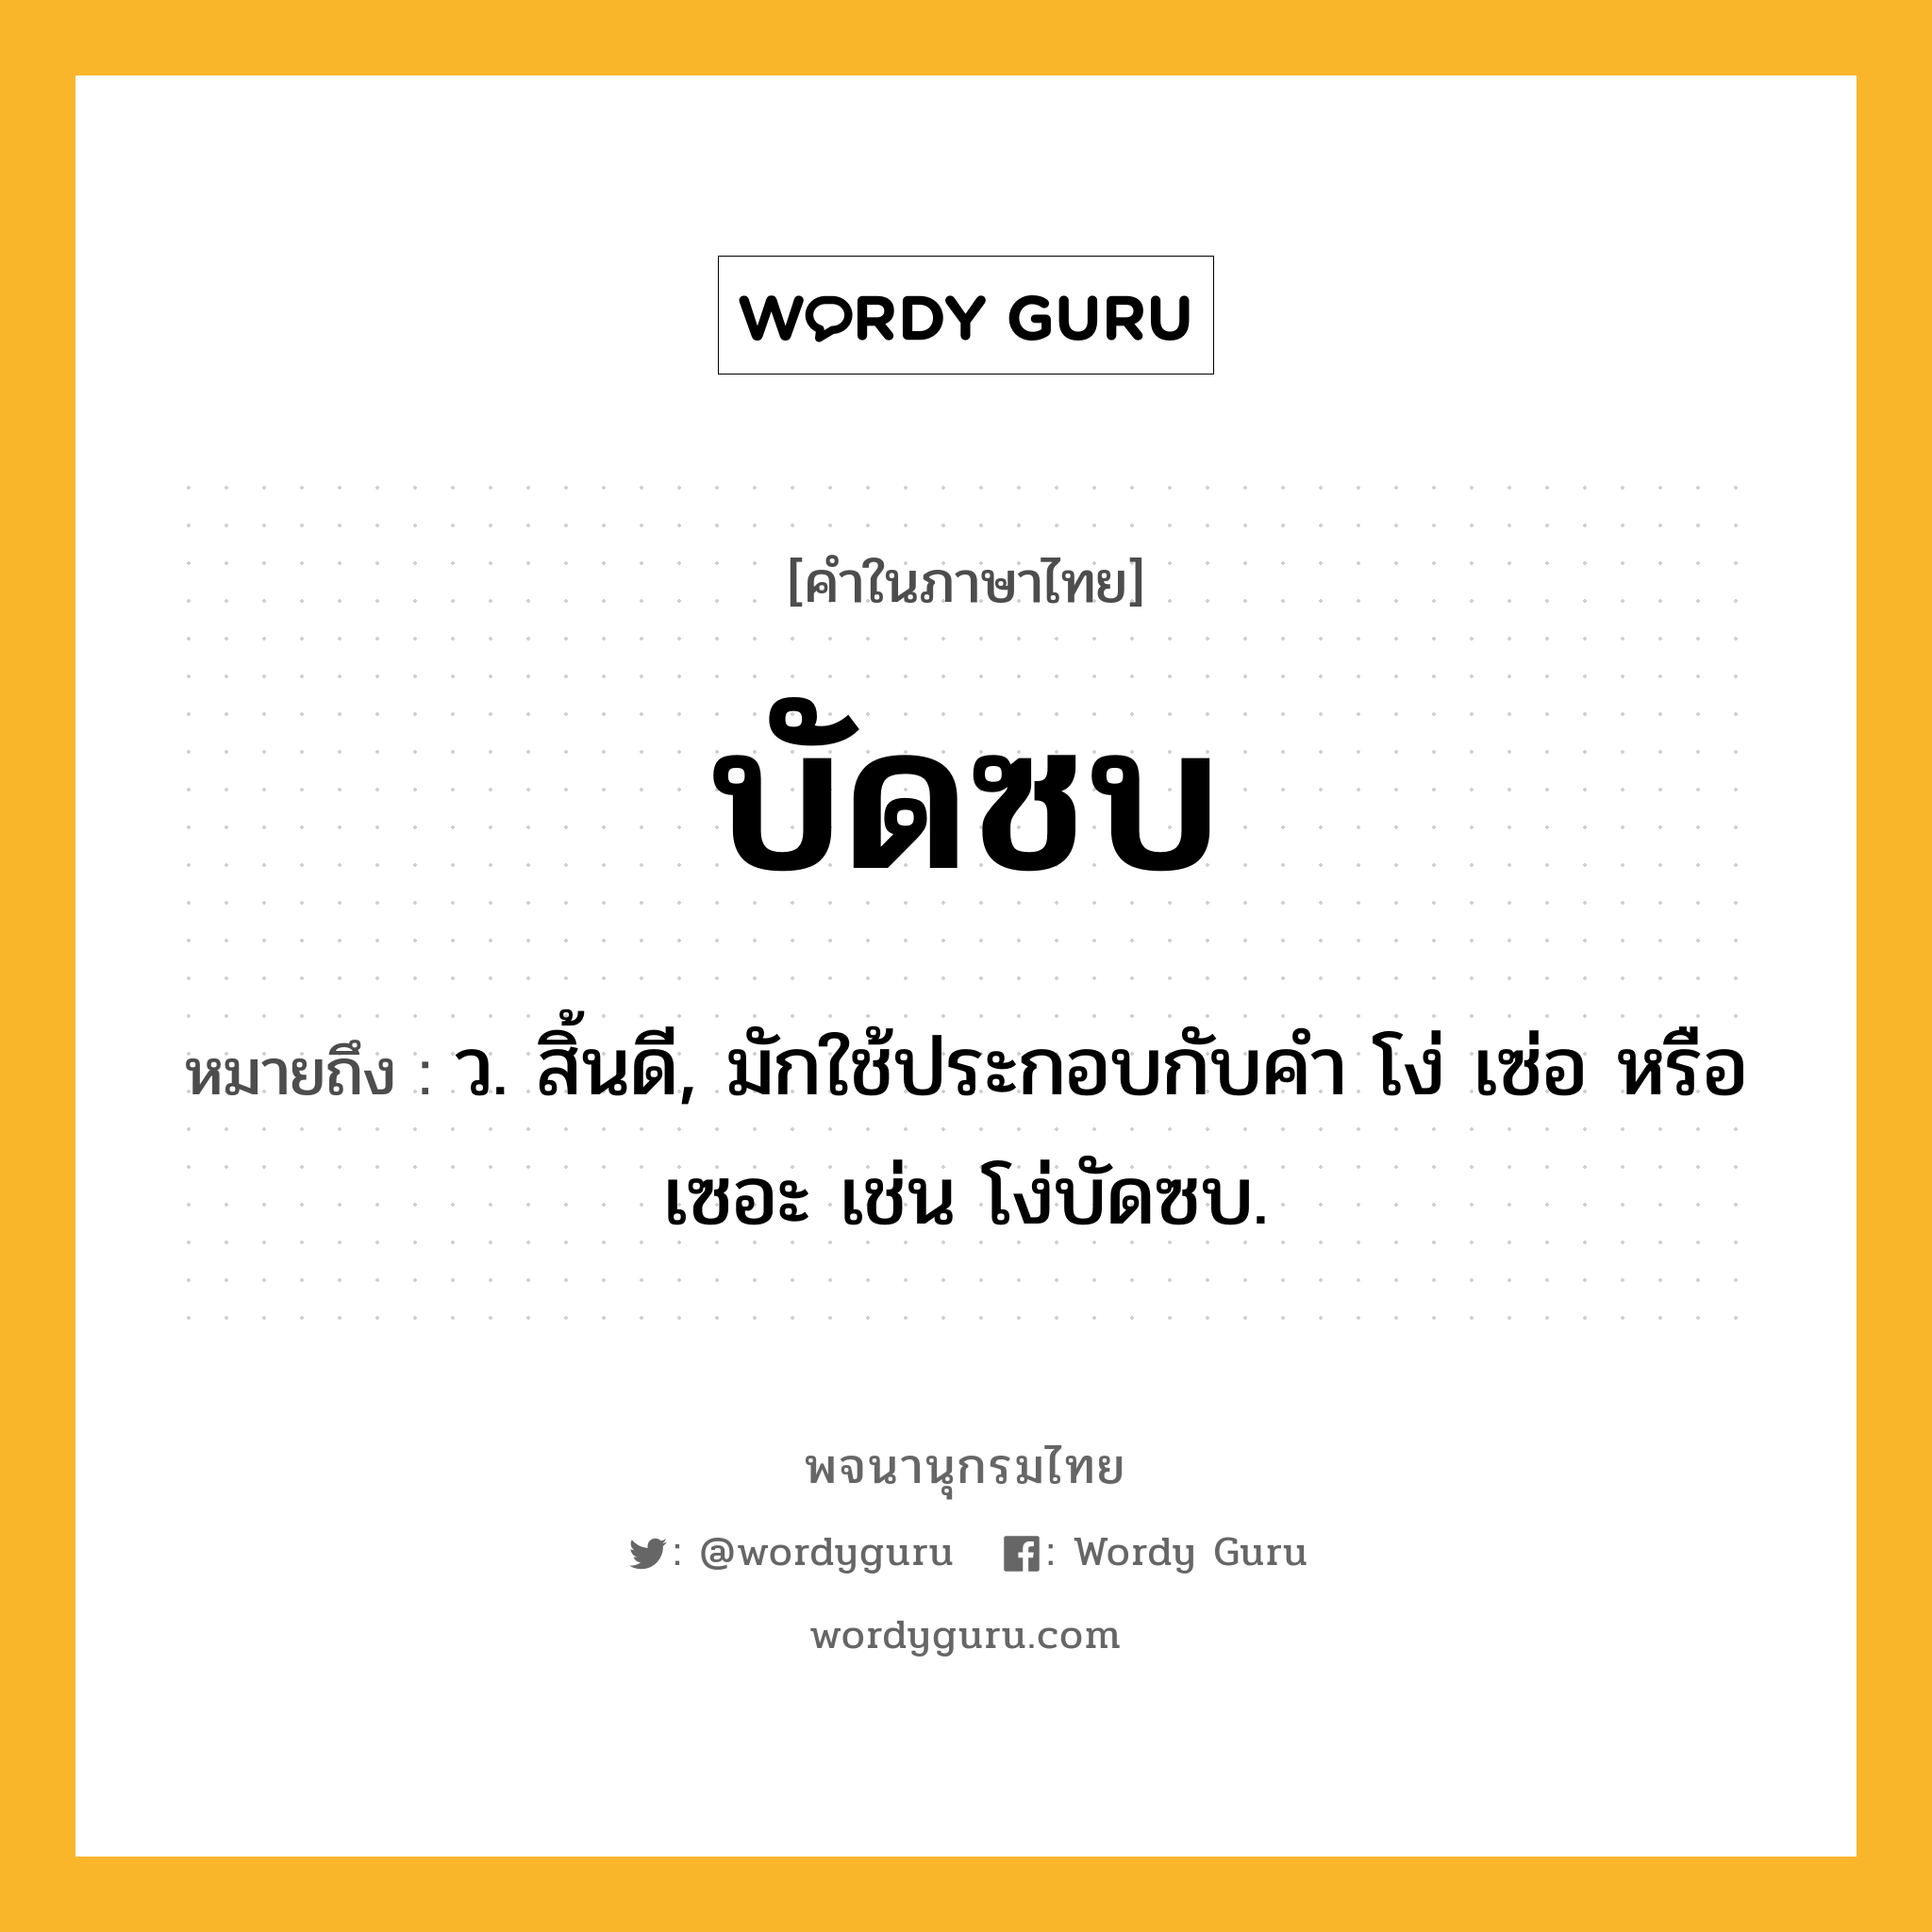 บัดซบ หมายถึงอะไร?, คำในภาษาไทย บัดซบ หมายถึง ว. สิ้นดี, มักใช้ประกอบกับคํา โง่ เซ่อ หรือ เซอะ เช่น โง่บัดซบ.